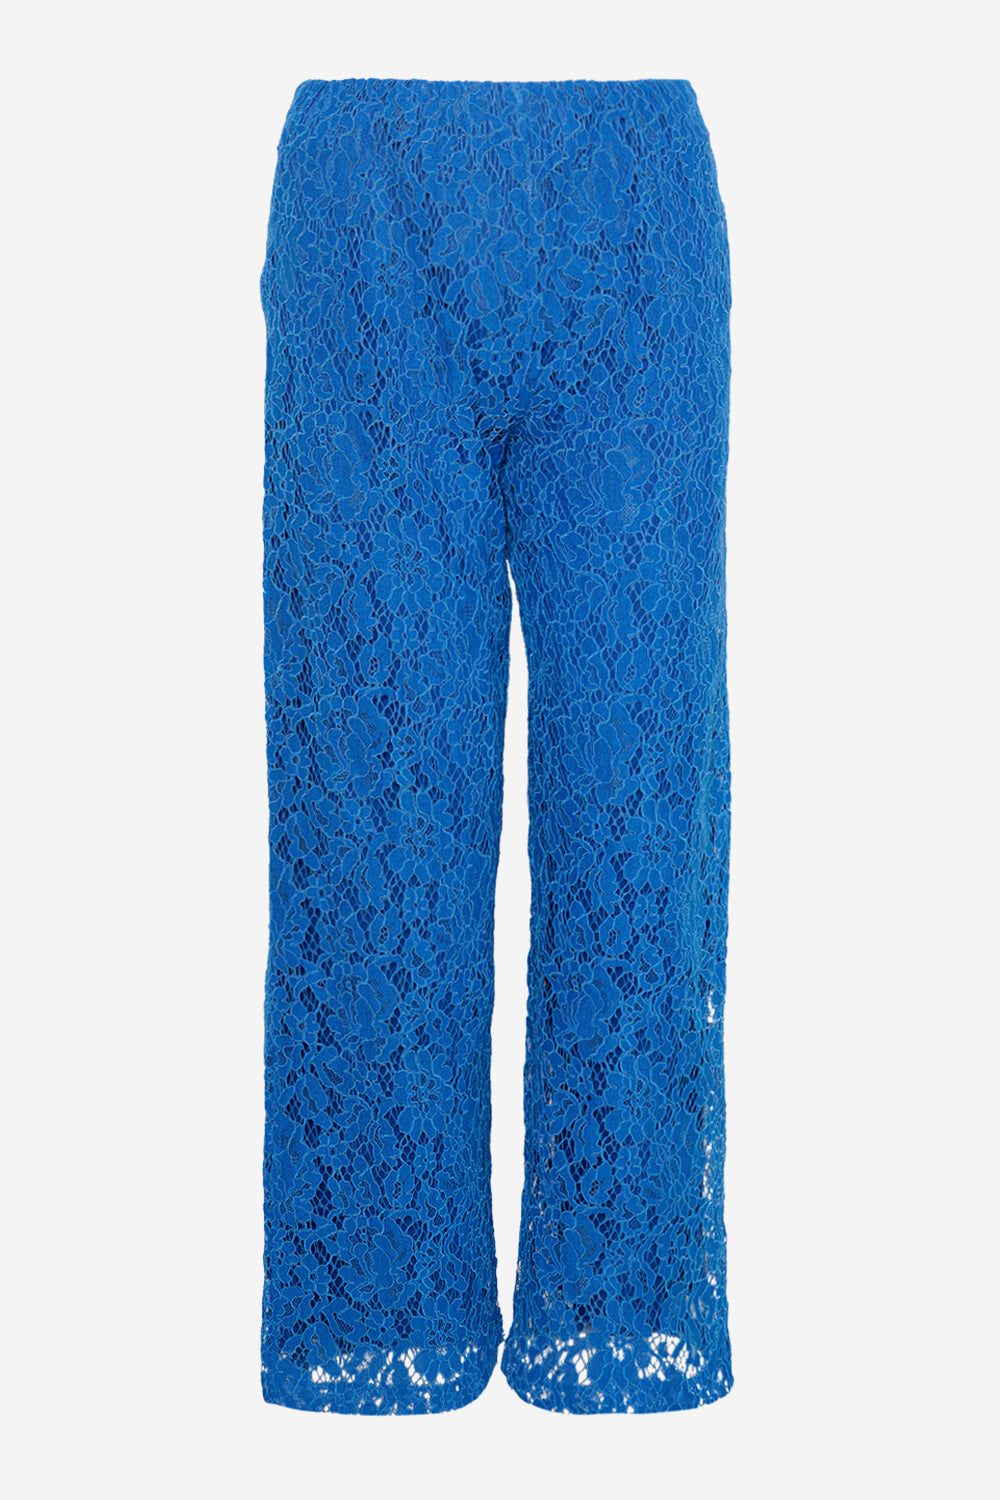 Bristol Lace Pants Royal Blue